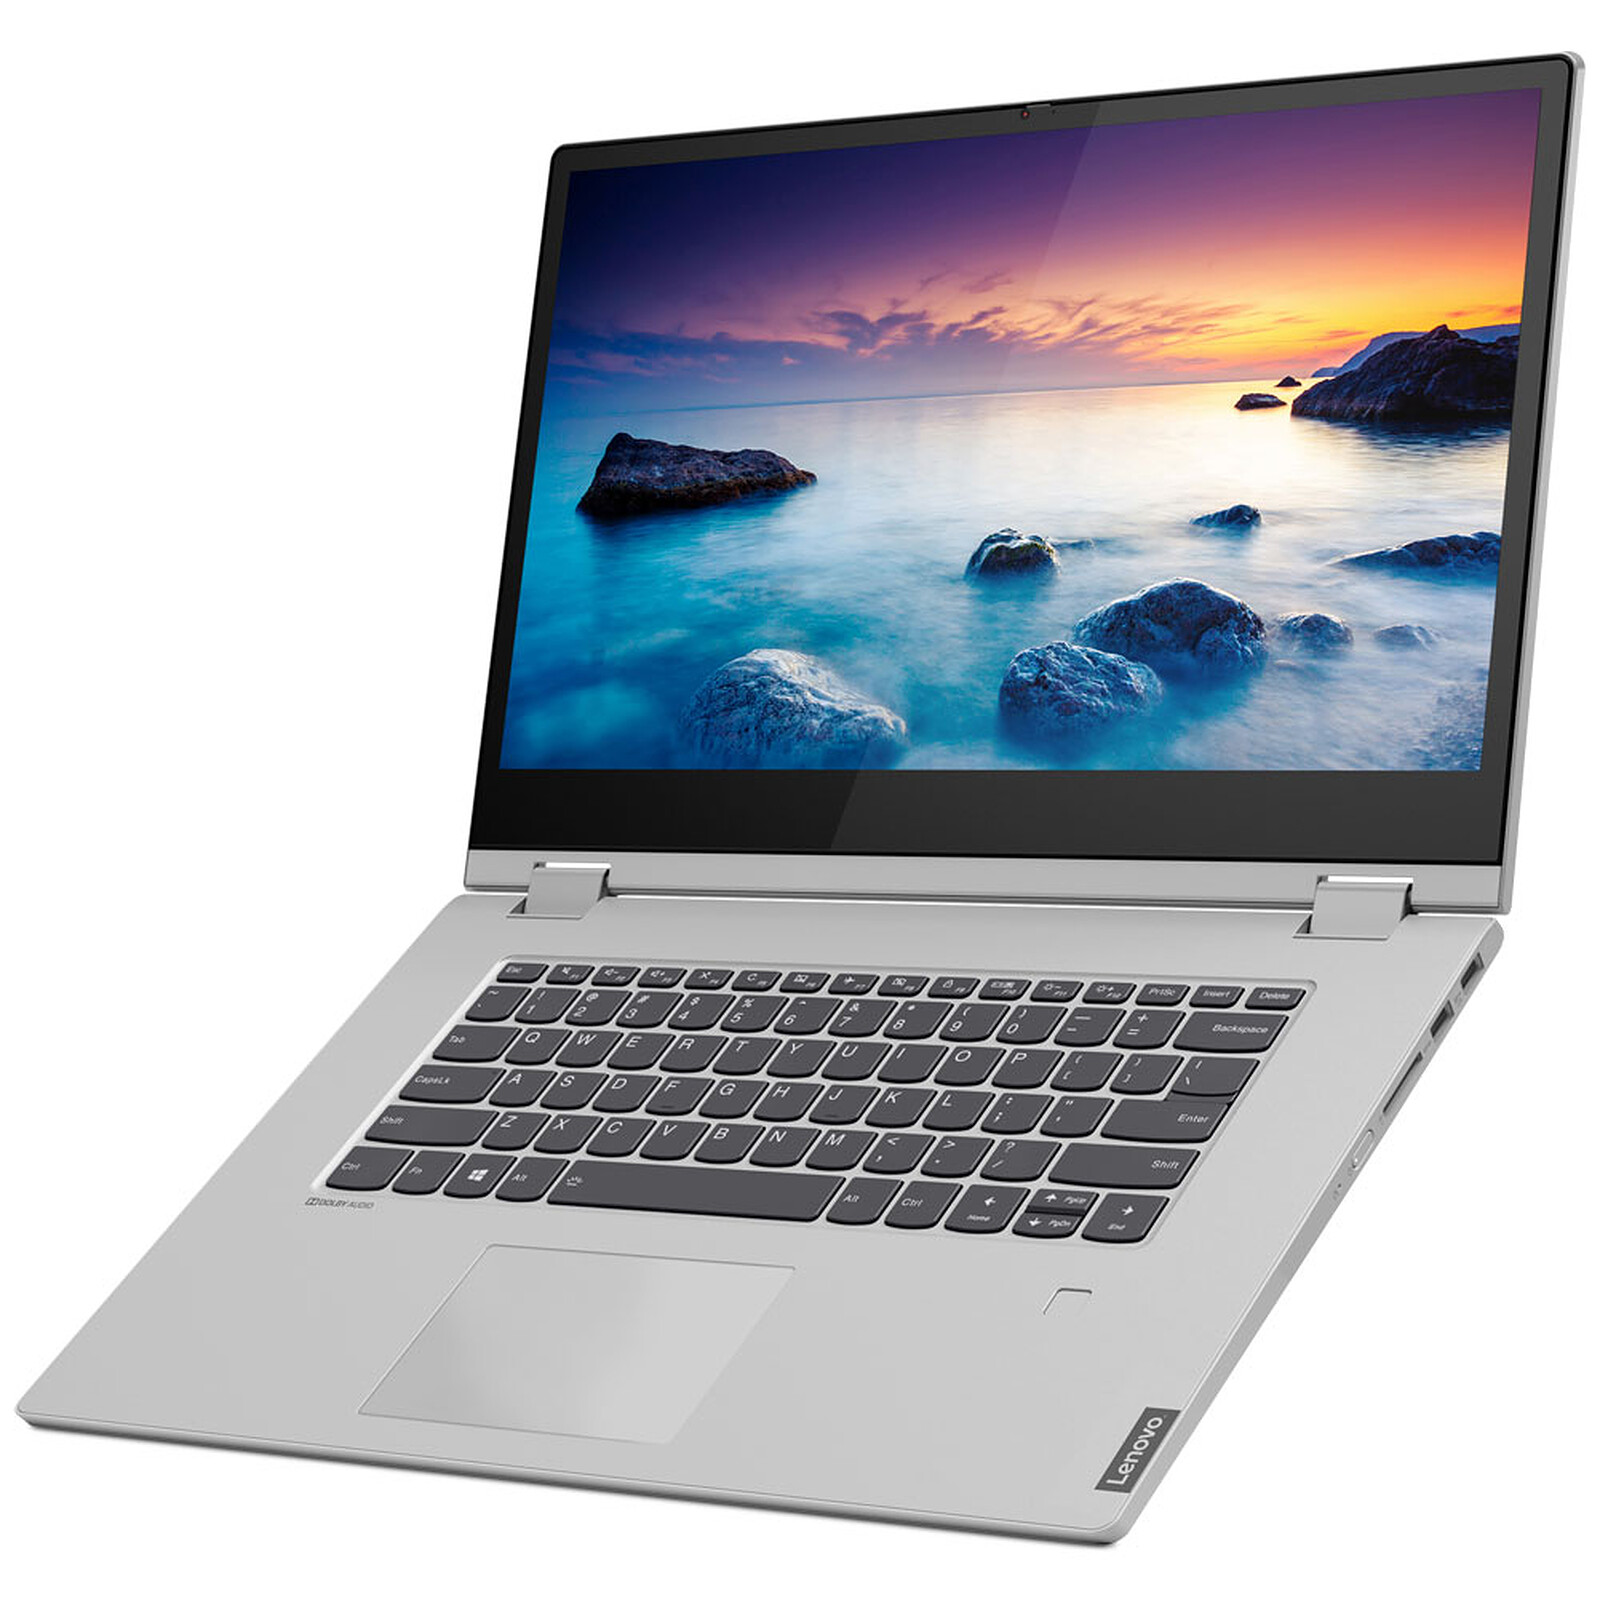 HP Laptop 15s-fq2050nf - PC portable - Garantie 3 ans LDLC